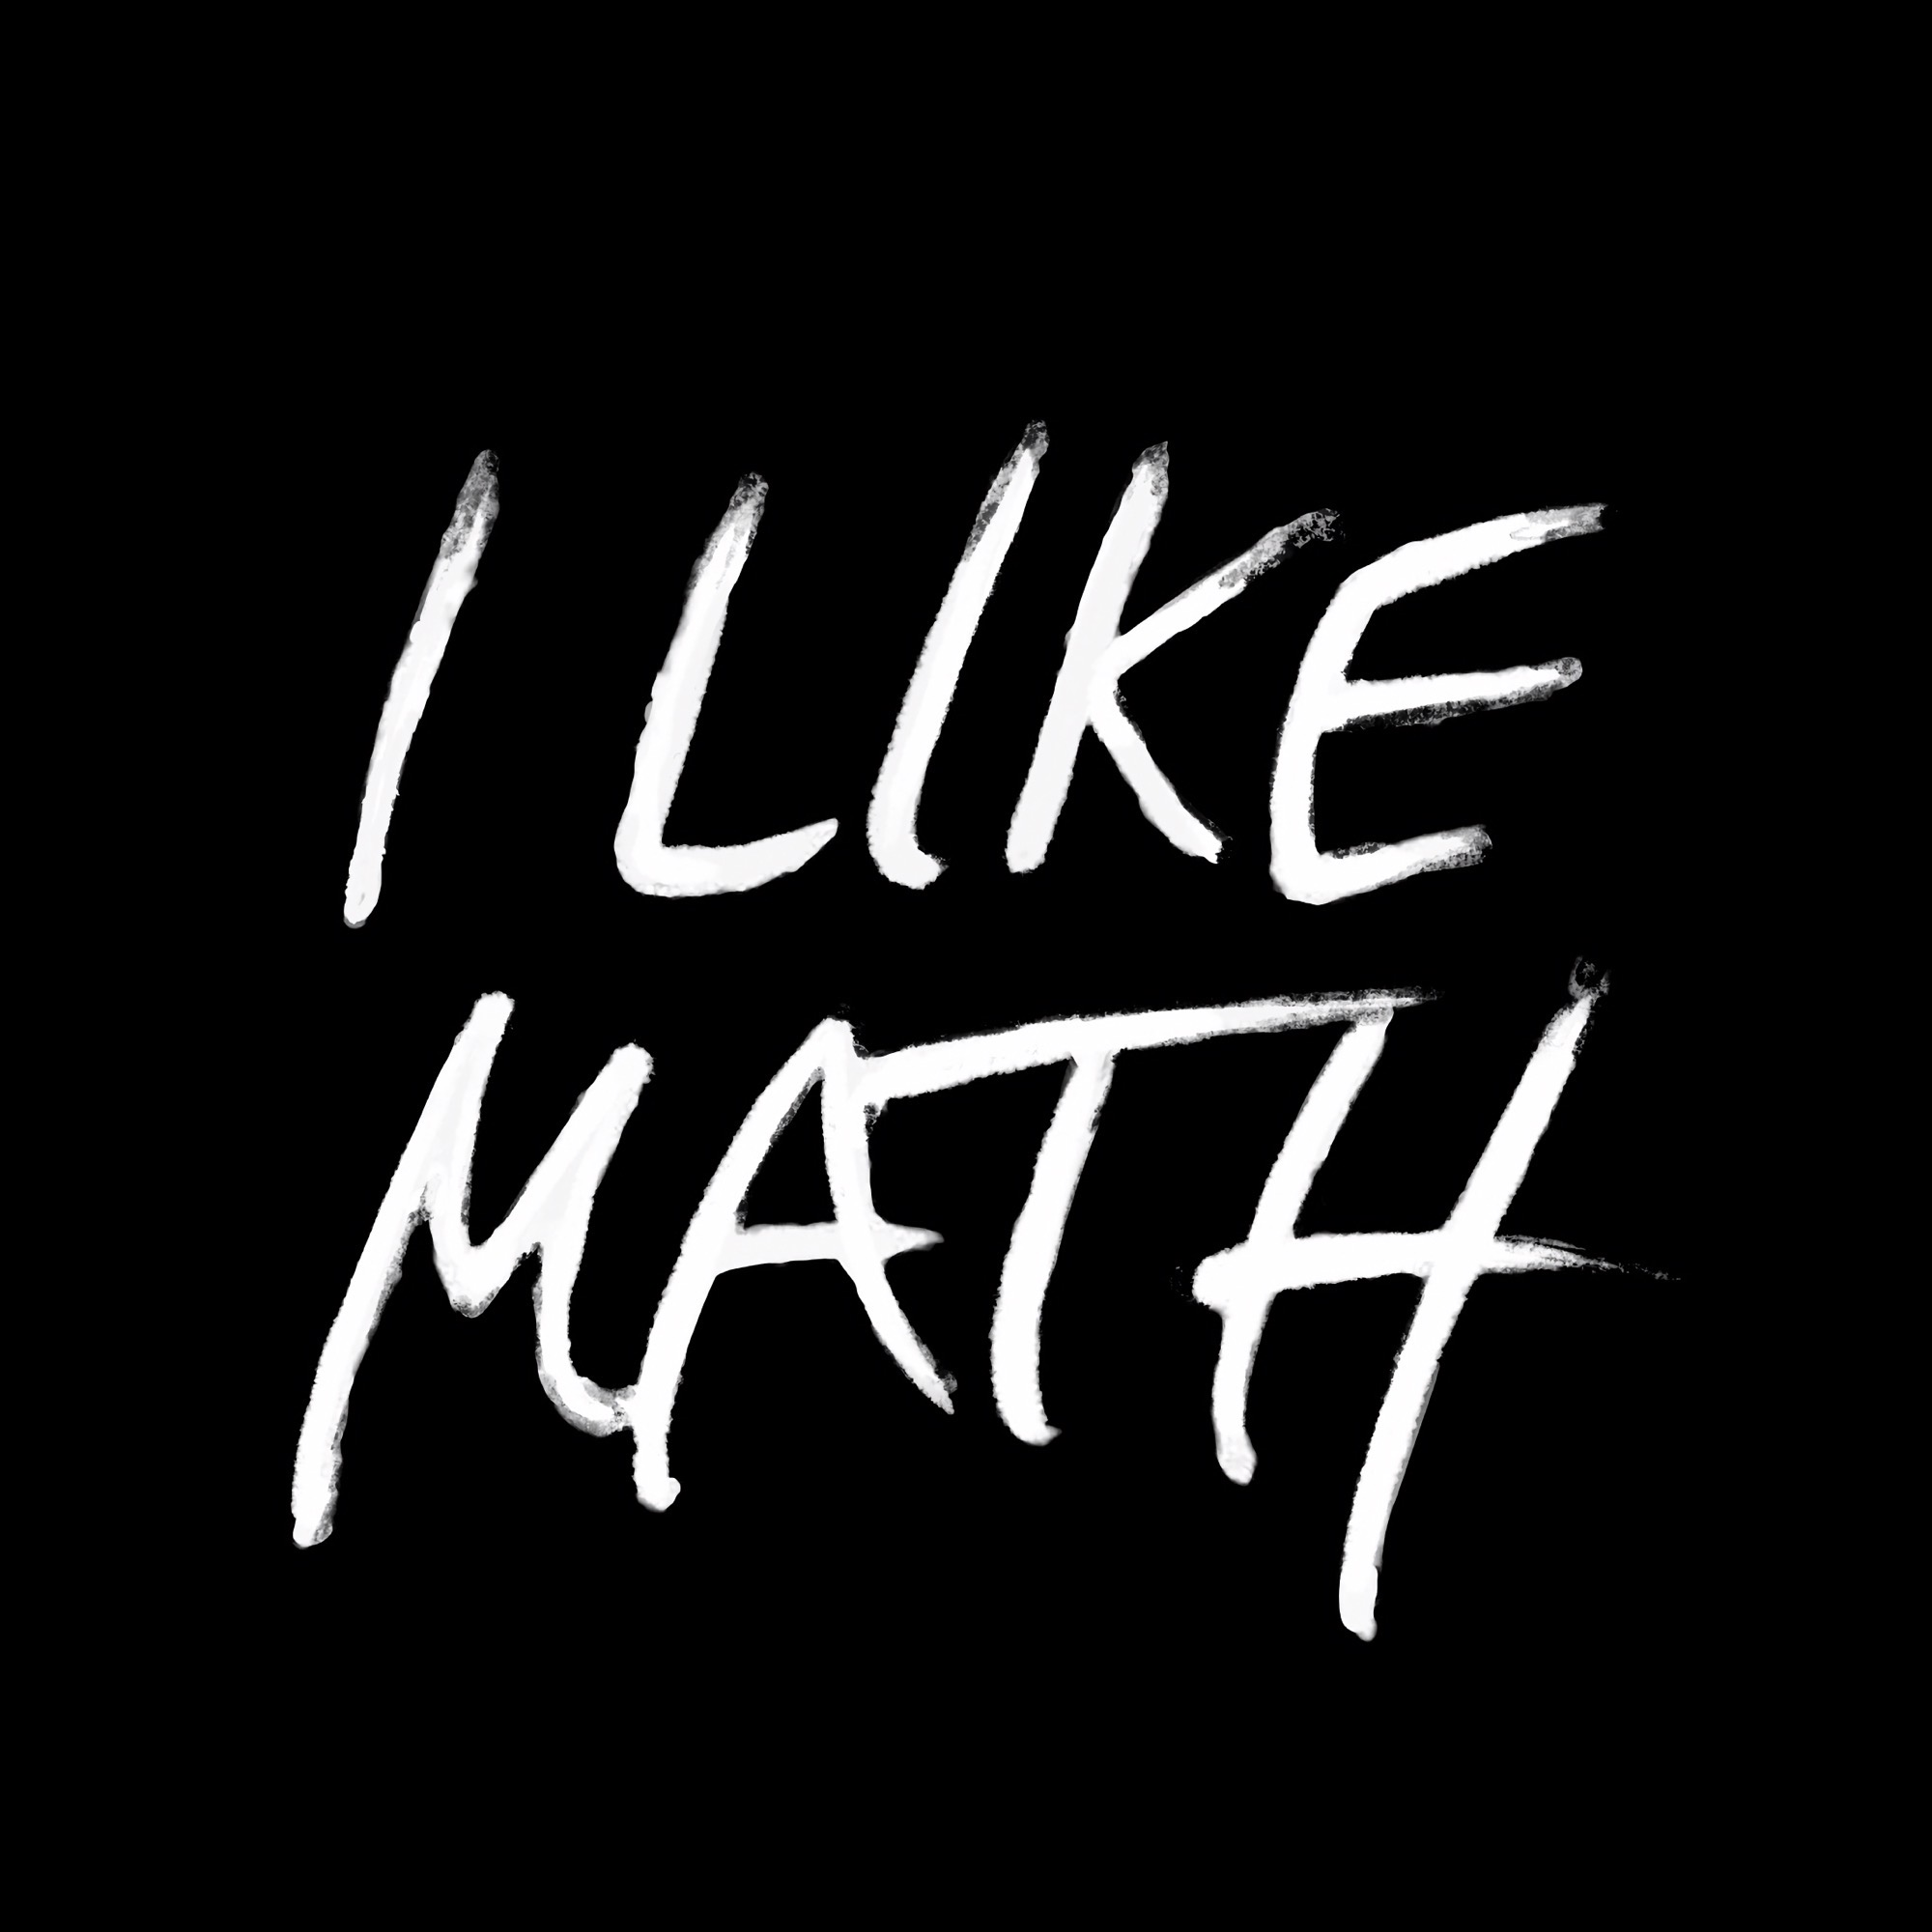 I Like Math